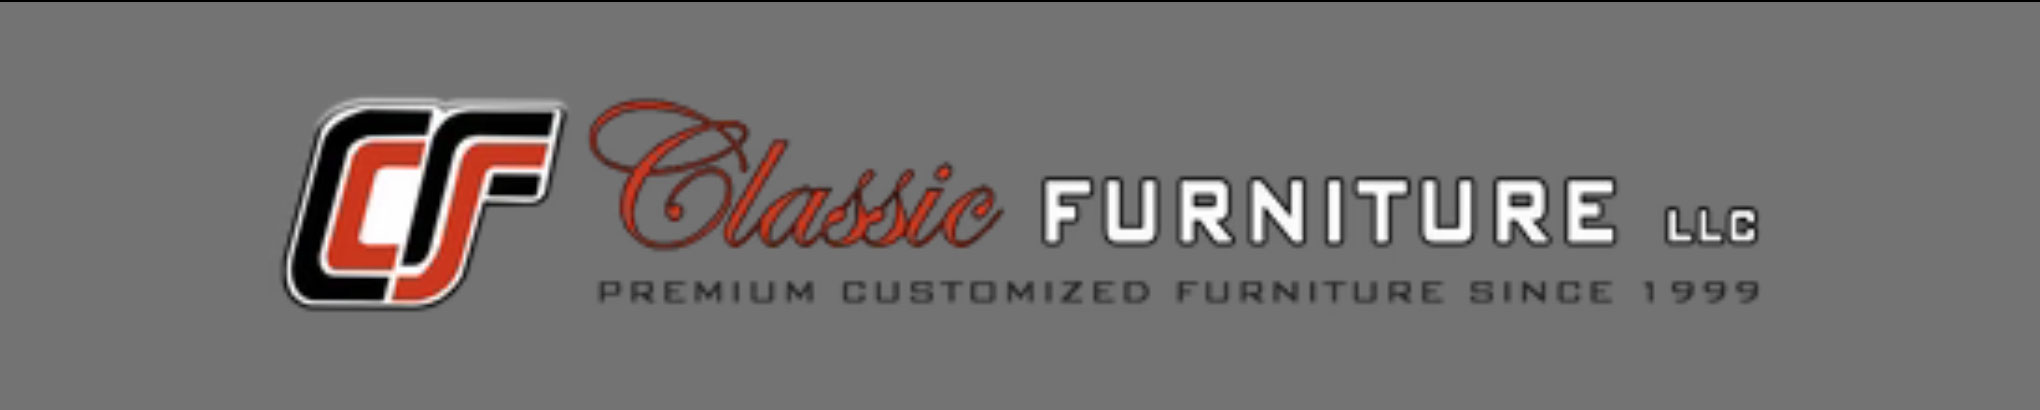 Classic Furniture's profile banner